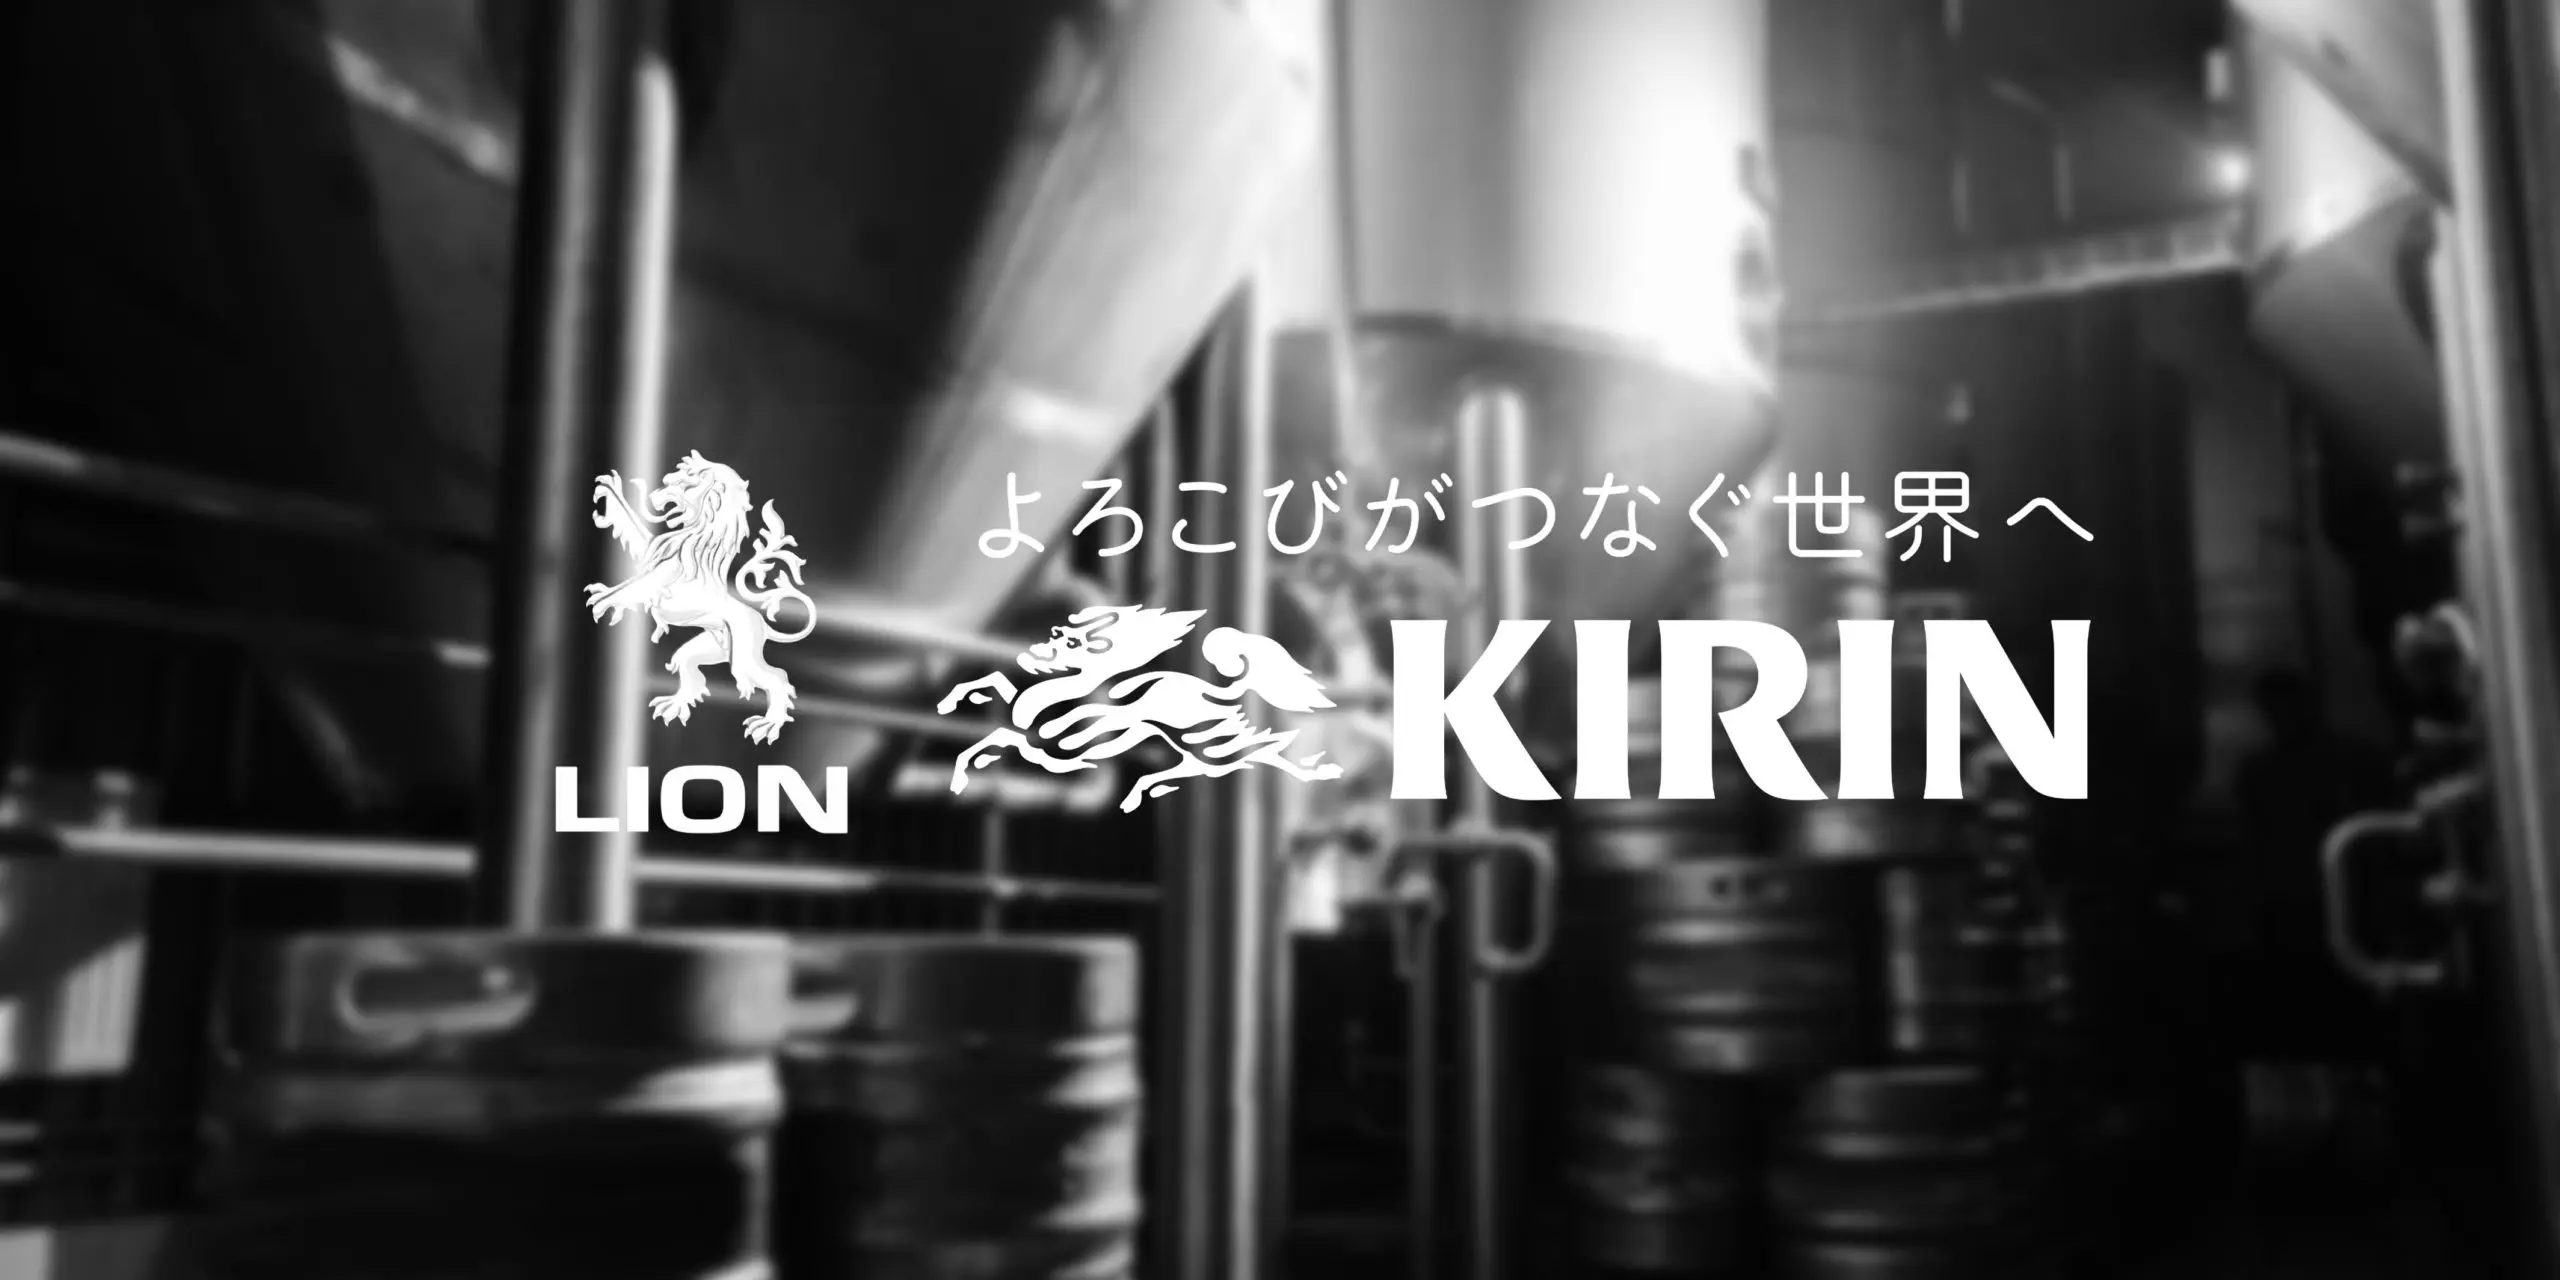 Kirin Lion logos